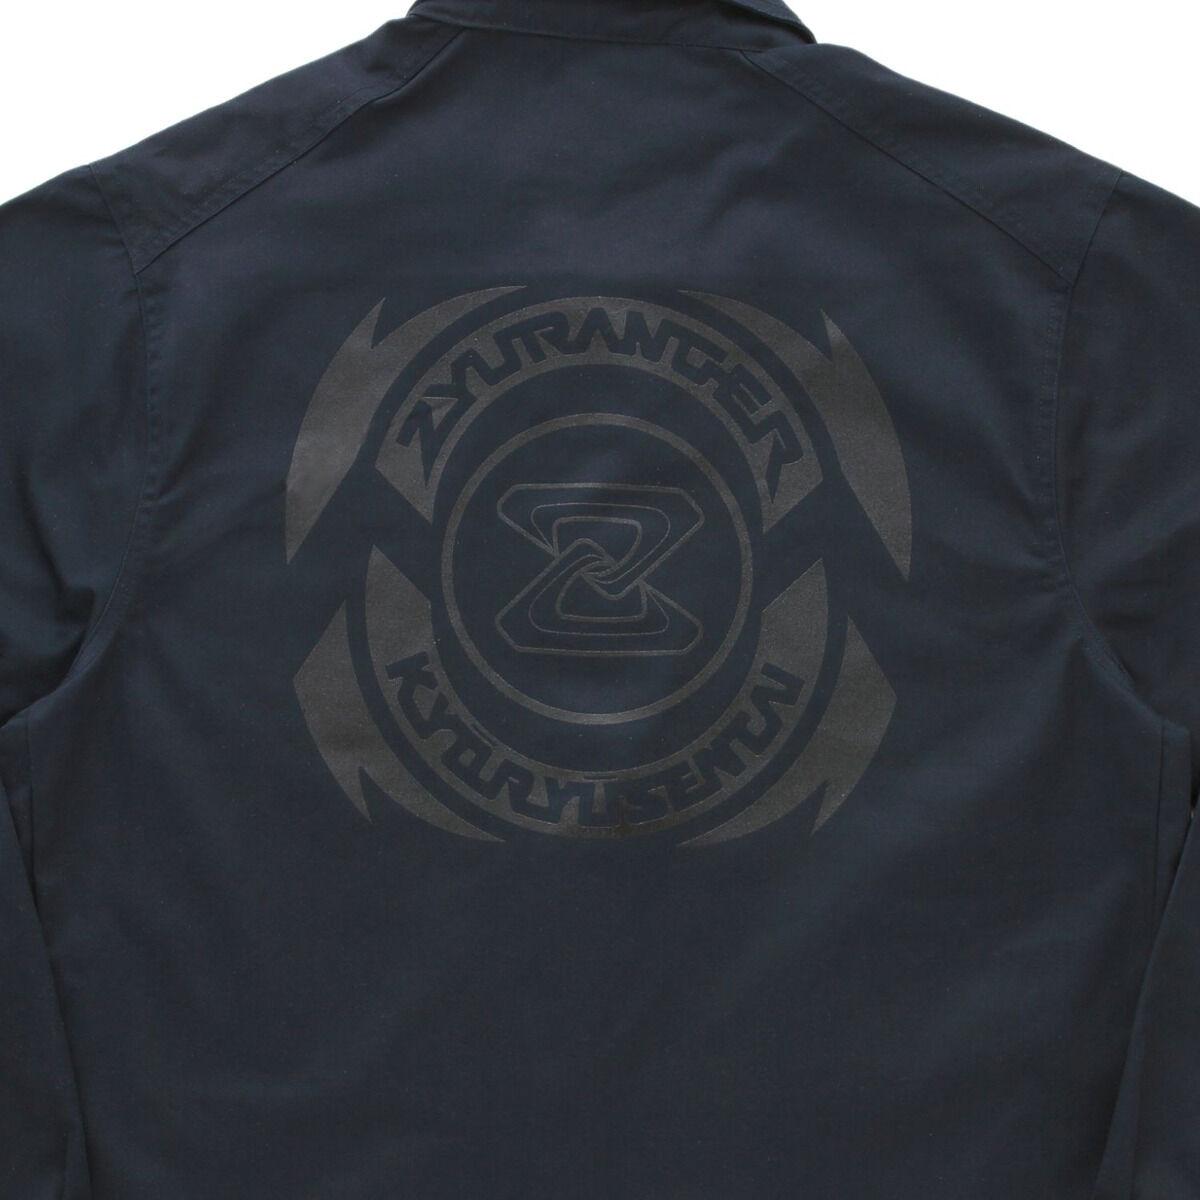 30th Anniversary Zyuranger Jacket